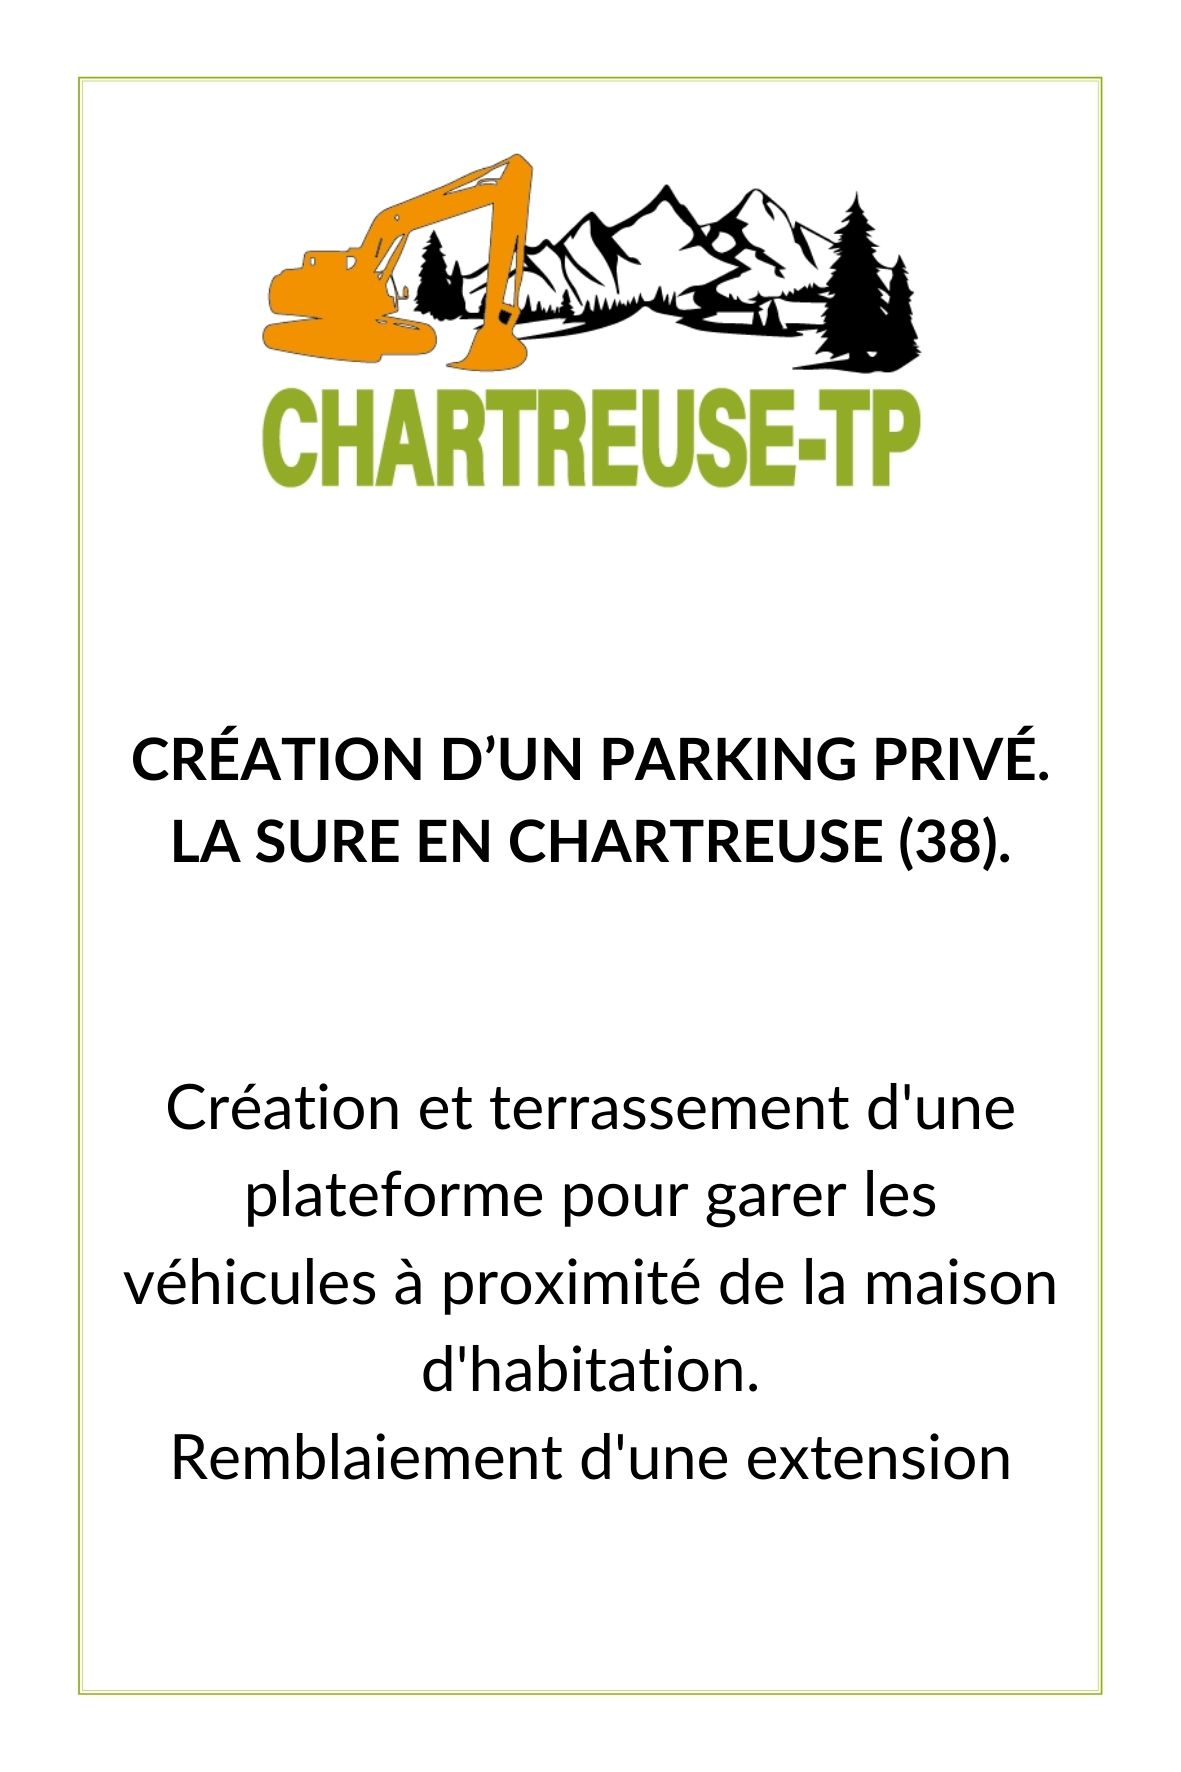 Création d'un parking privé par Chartreuse-TP